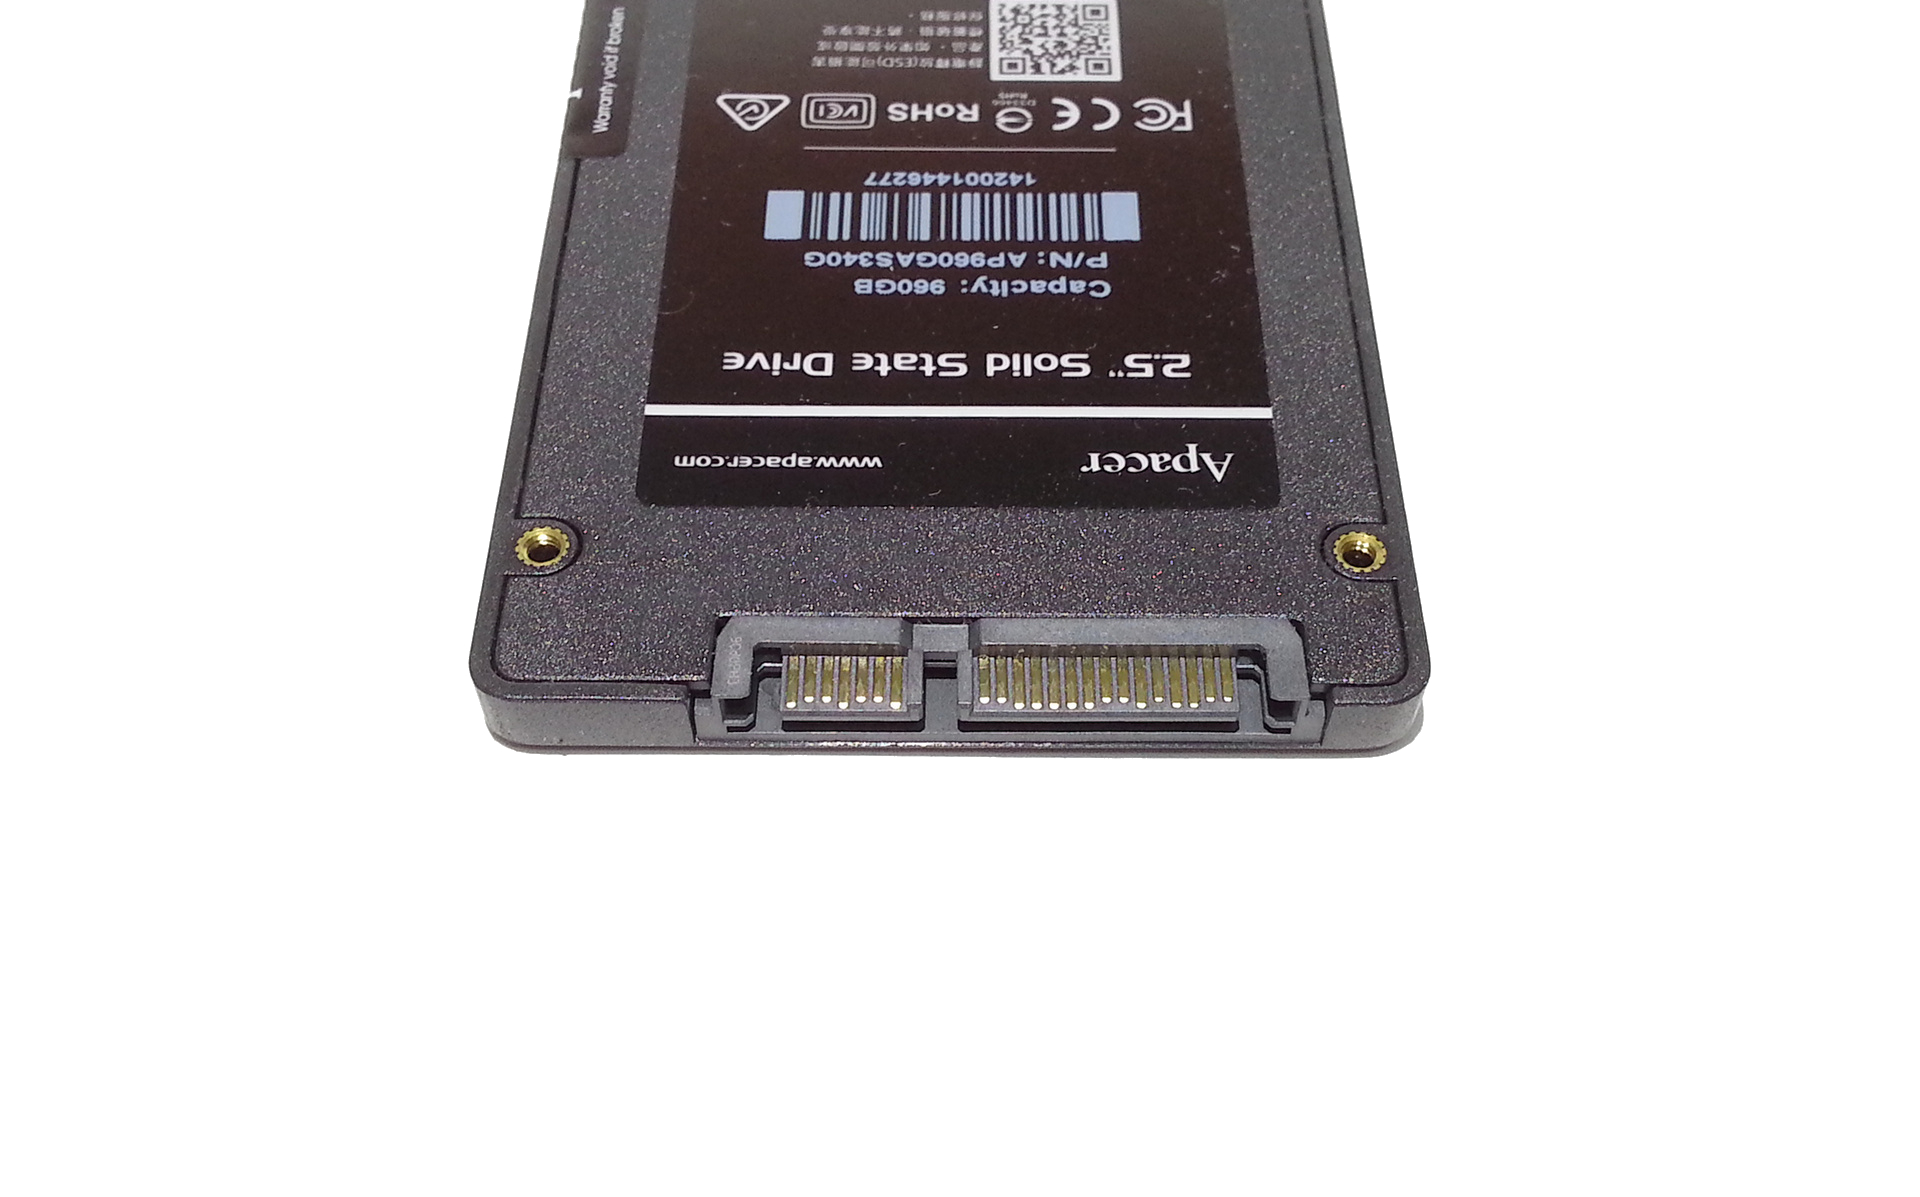 Ssd накопитель panther. Apacer as340 120gb. Твердотельный SSD накопитель 960 GB. Apacer as340 240gb. Ссд диск Panther 512.